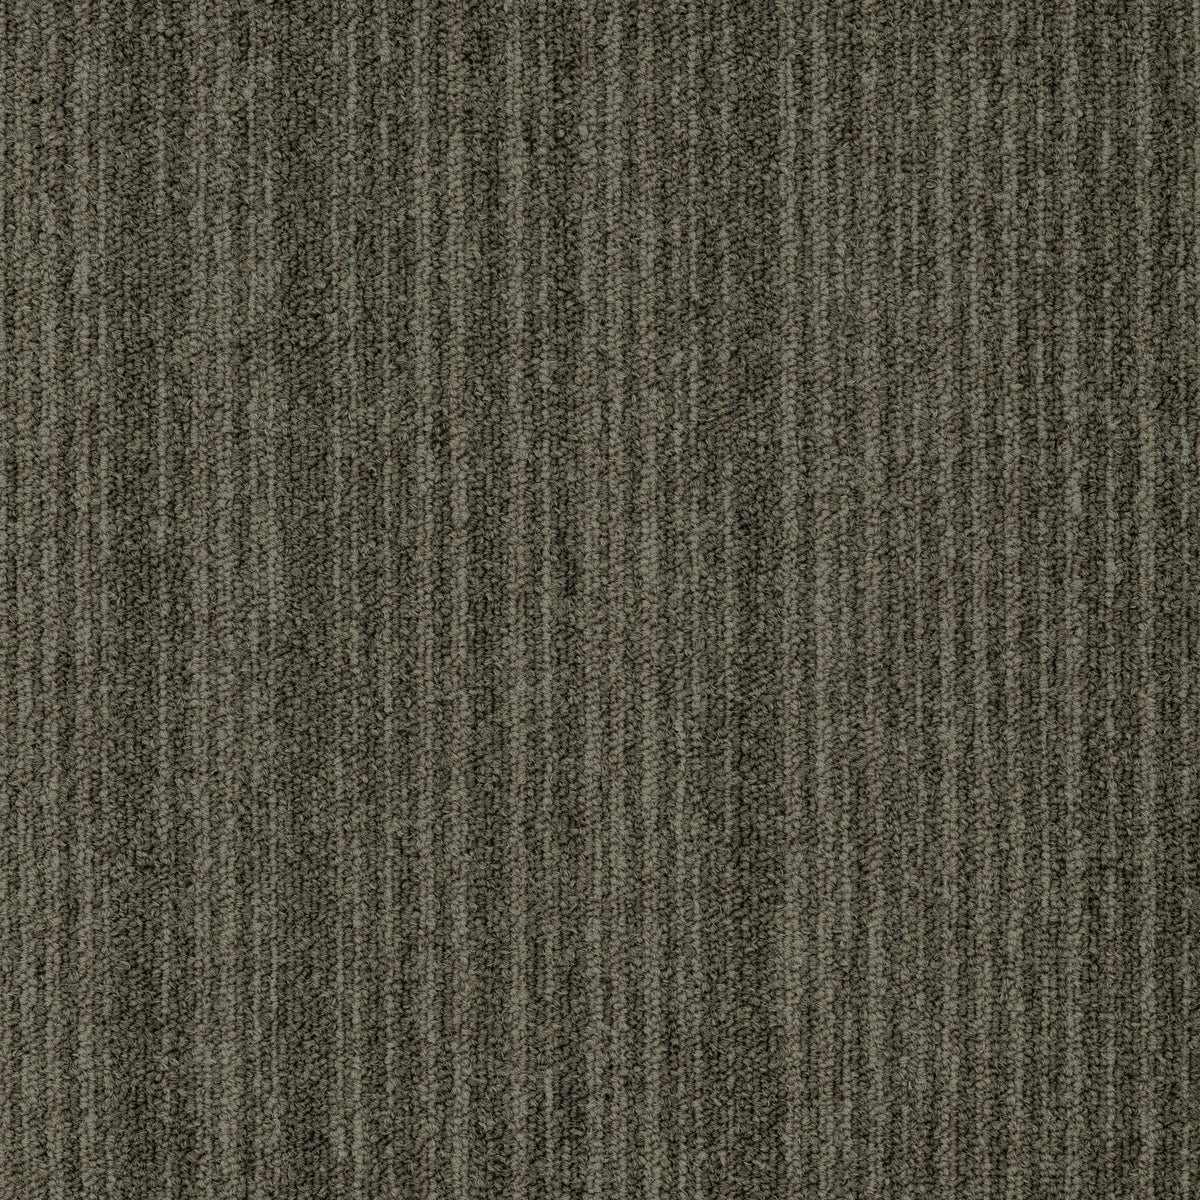 Mohawk Group - Art Intervention Draft Point Carpet Tile - Sand 847